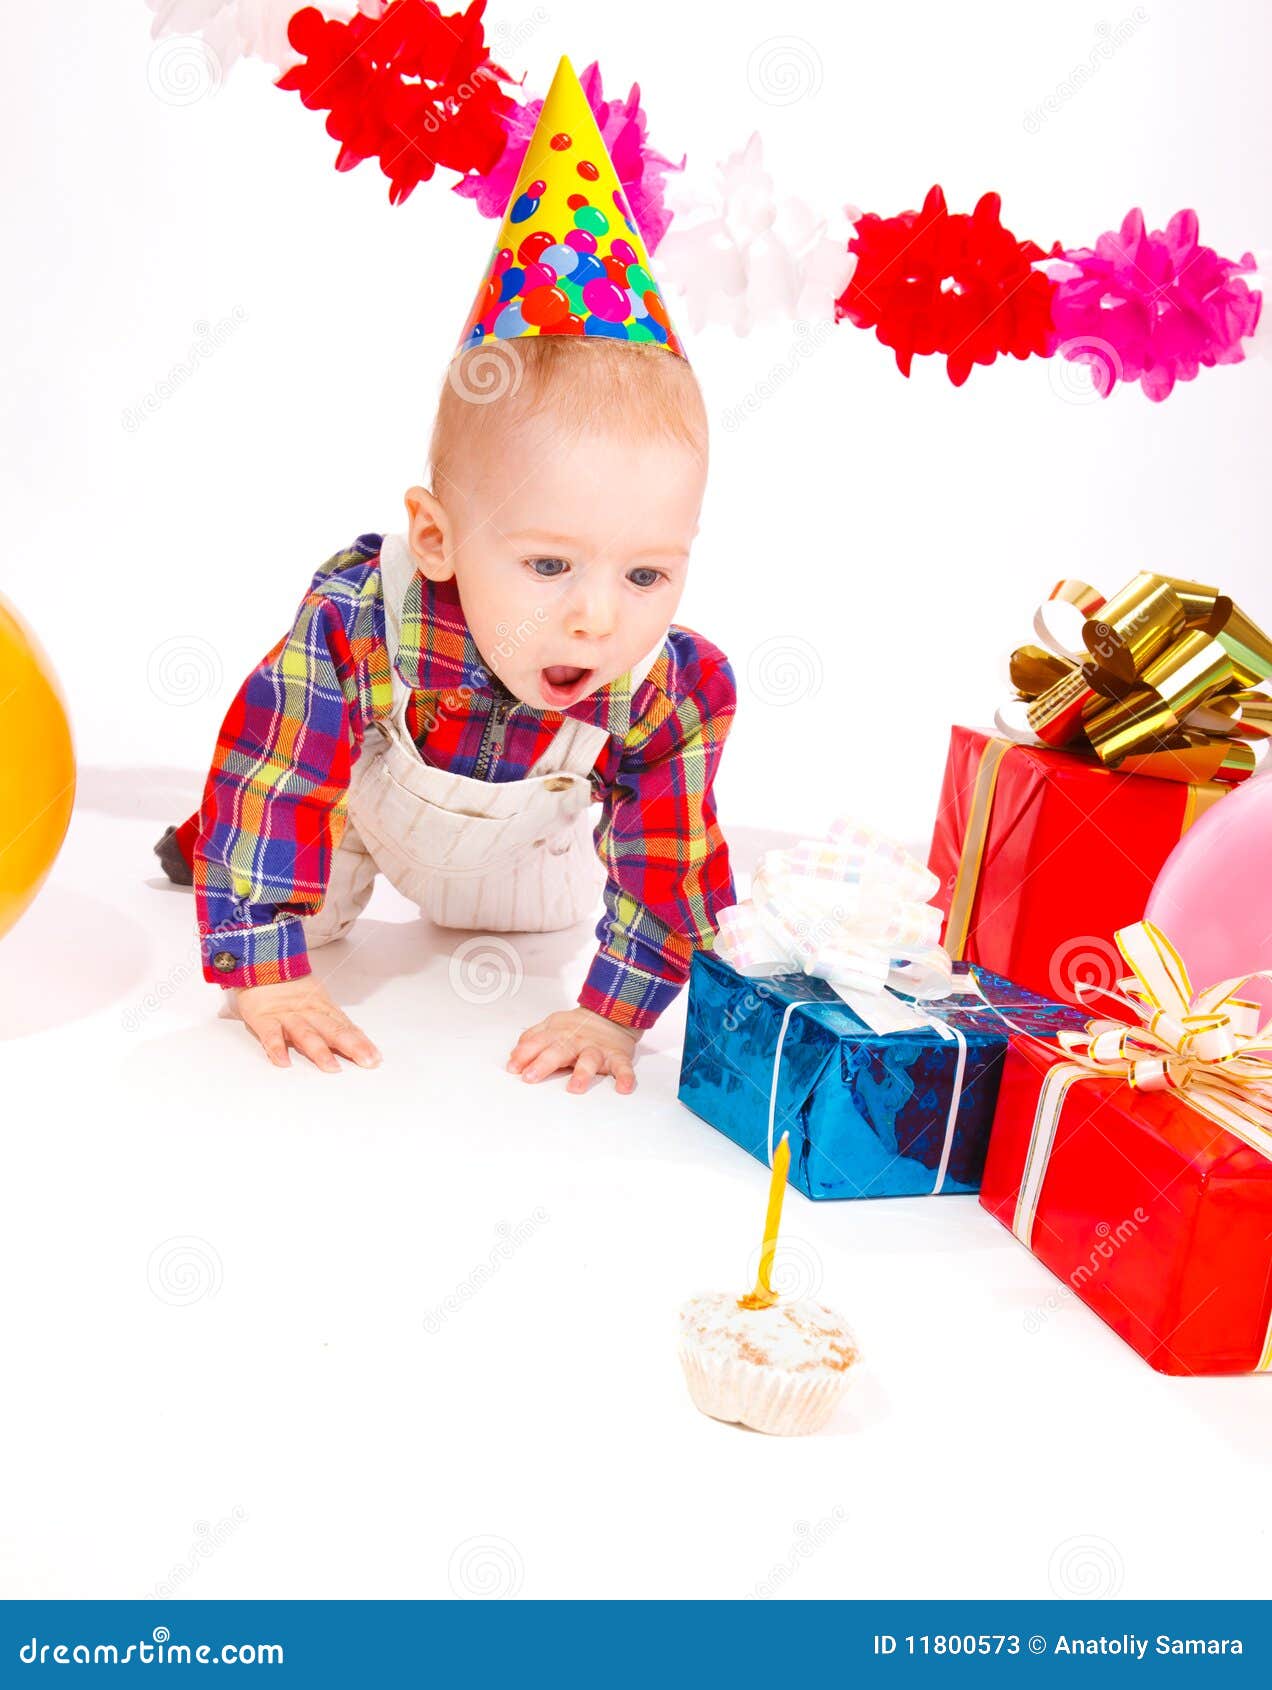 Birthday cake stock image. Image of party, celebration - 11800573